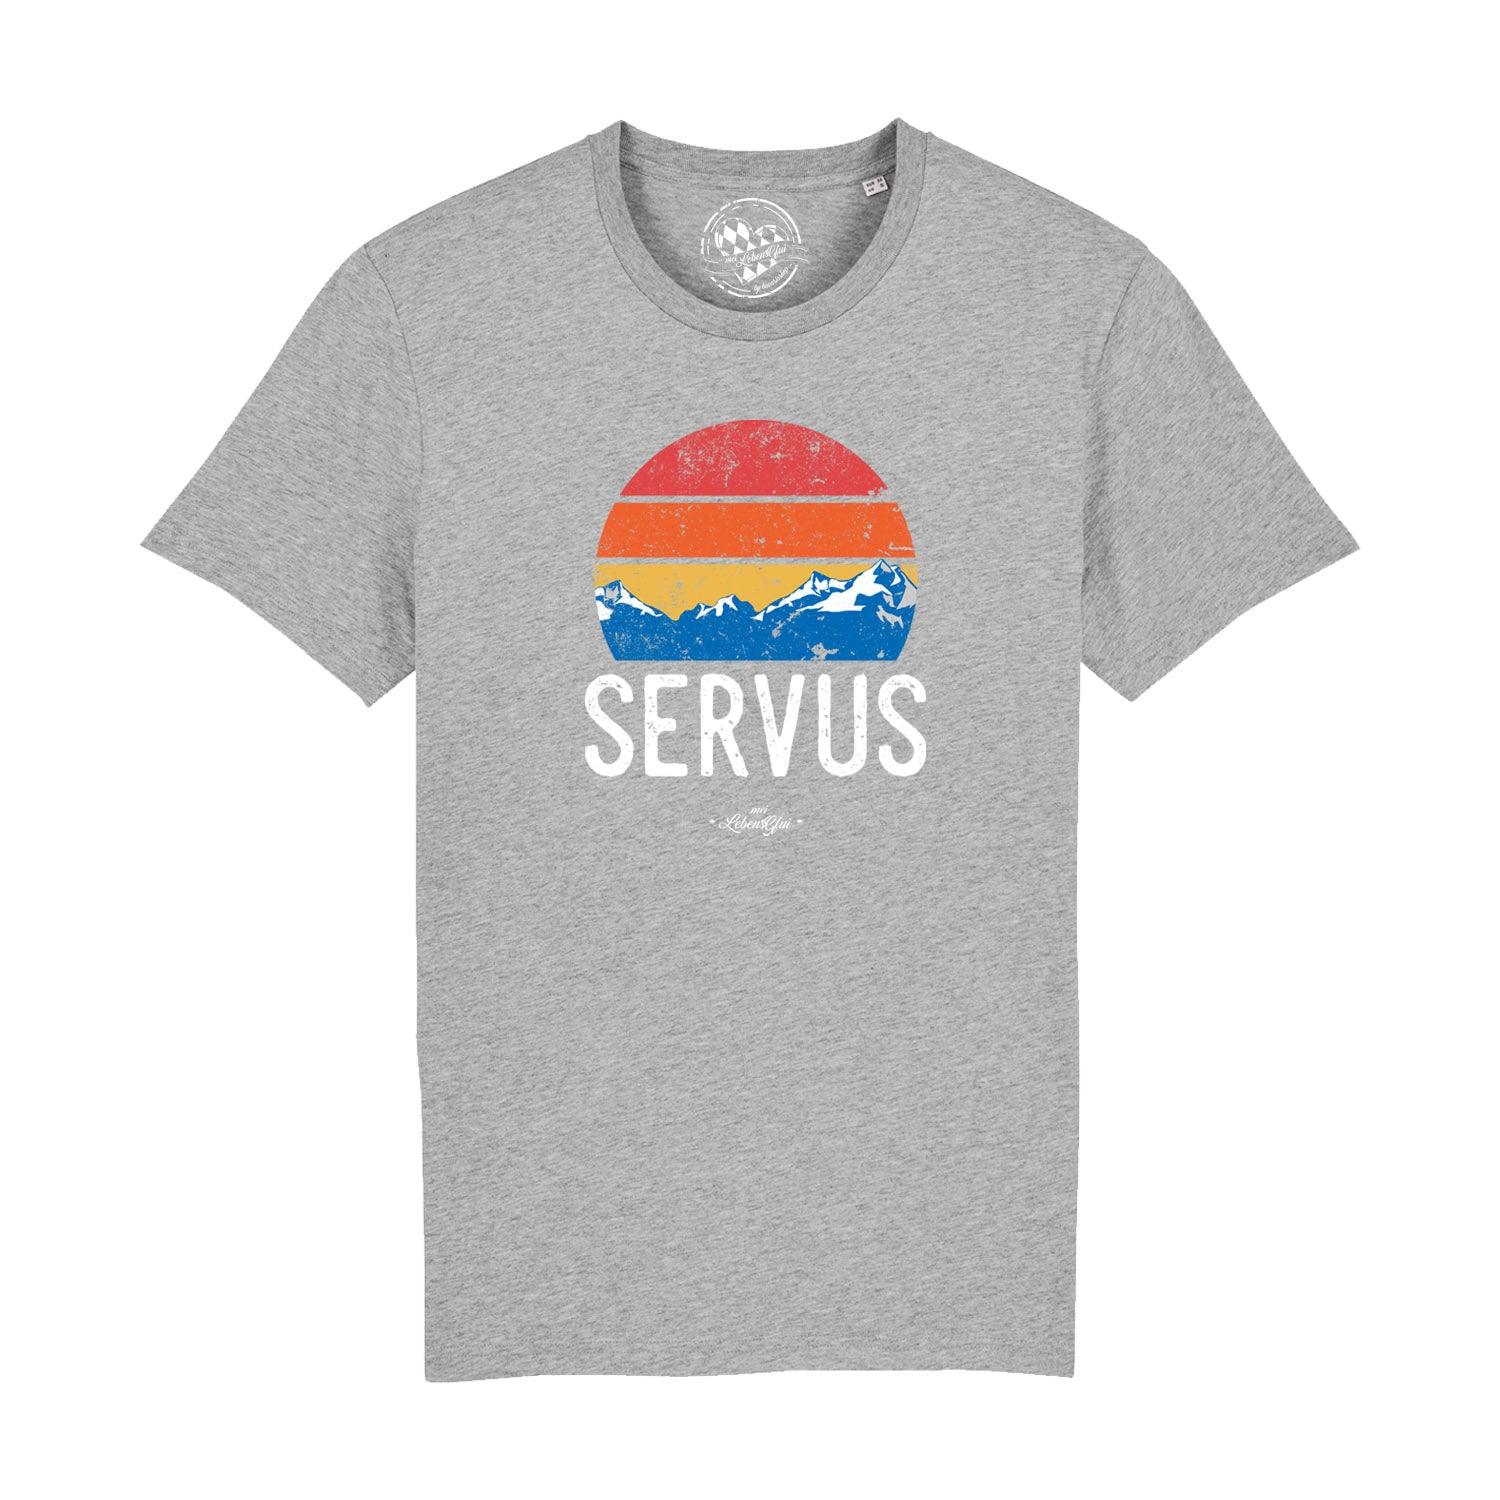 Herren T-Shirt "Servus" - bavariashop - mei LebensGfui